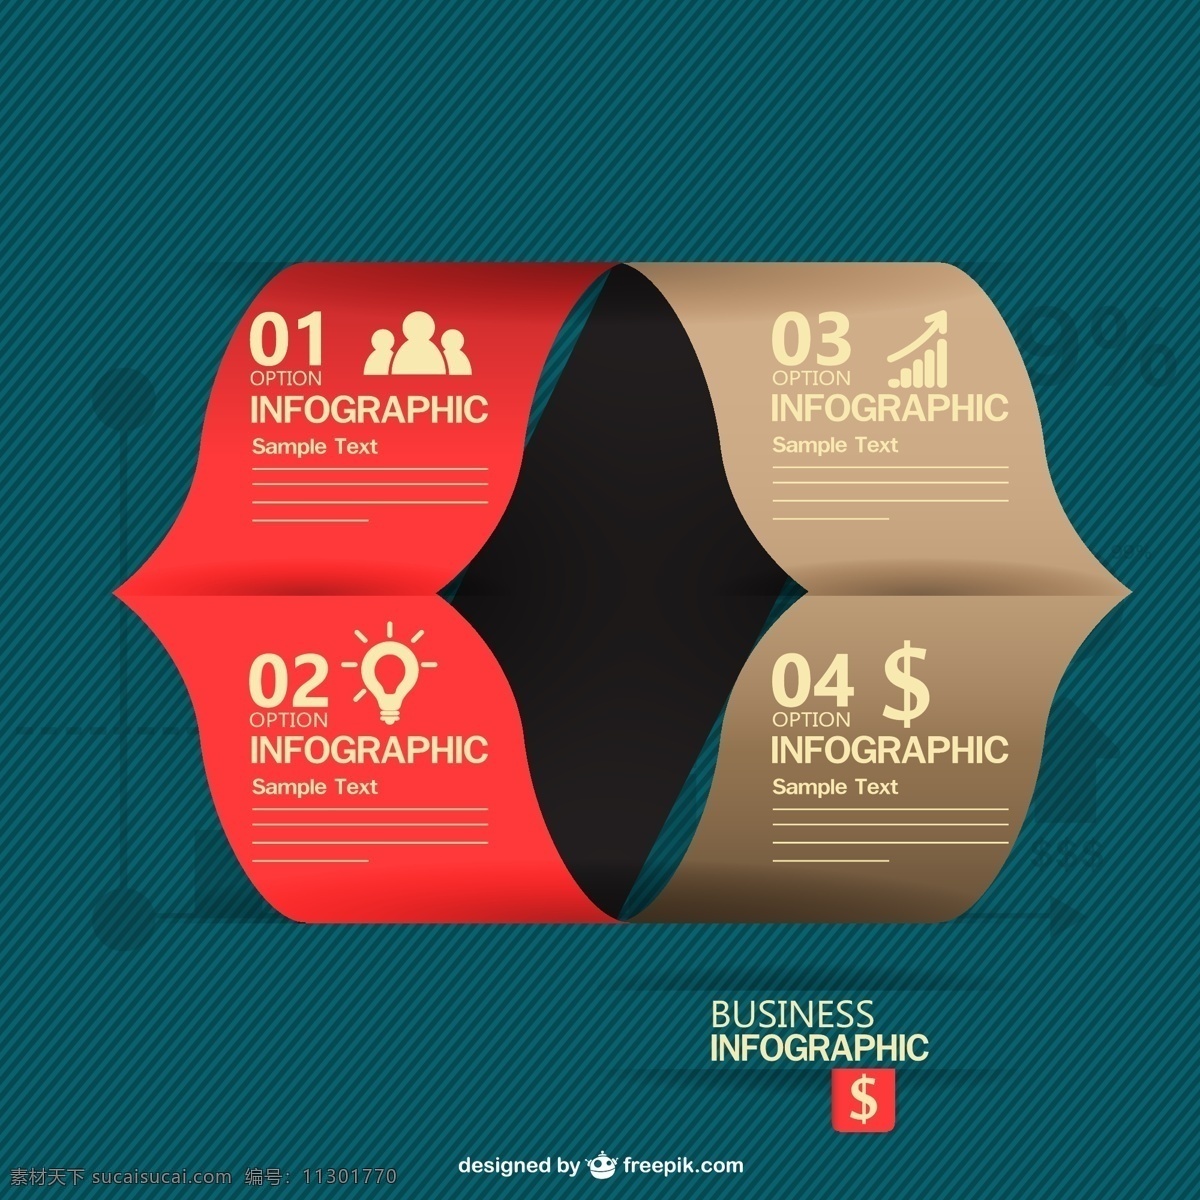 红 棕色 商务 图表 业务 纸张 模板 营销 折纸 图形 布局 展示 平面设计 金融 信息图表设计 市场 图 数据 信息 青色 天蓝色